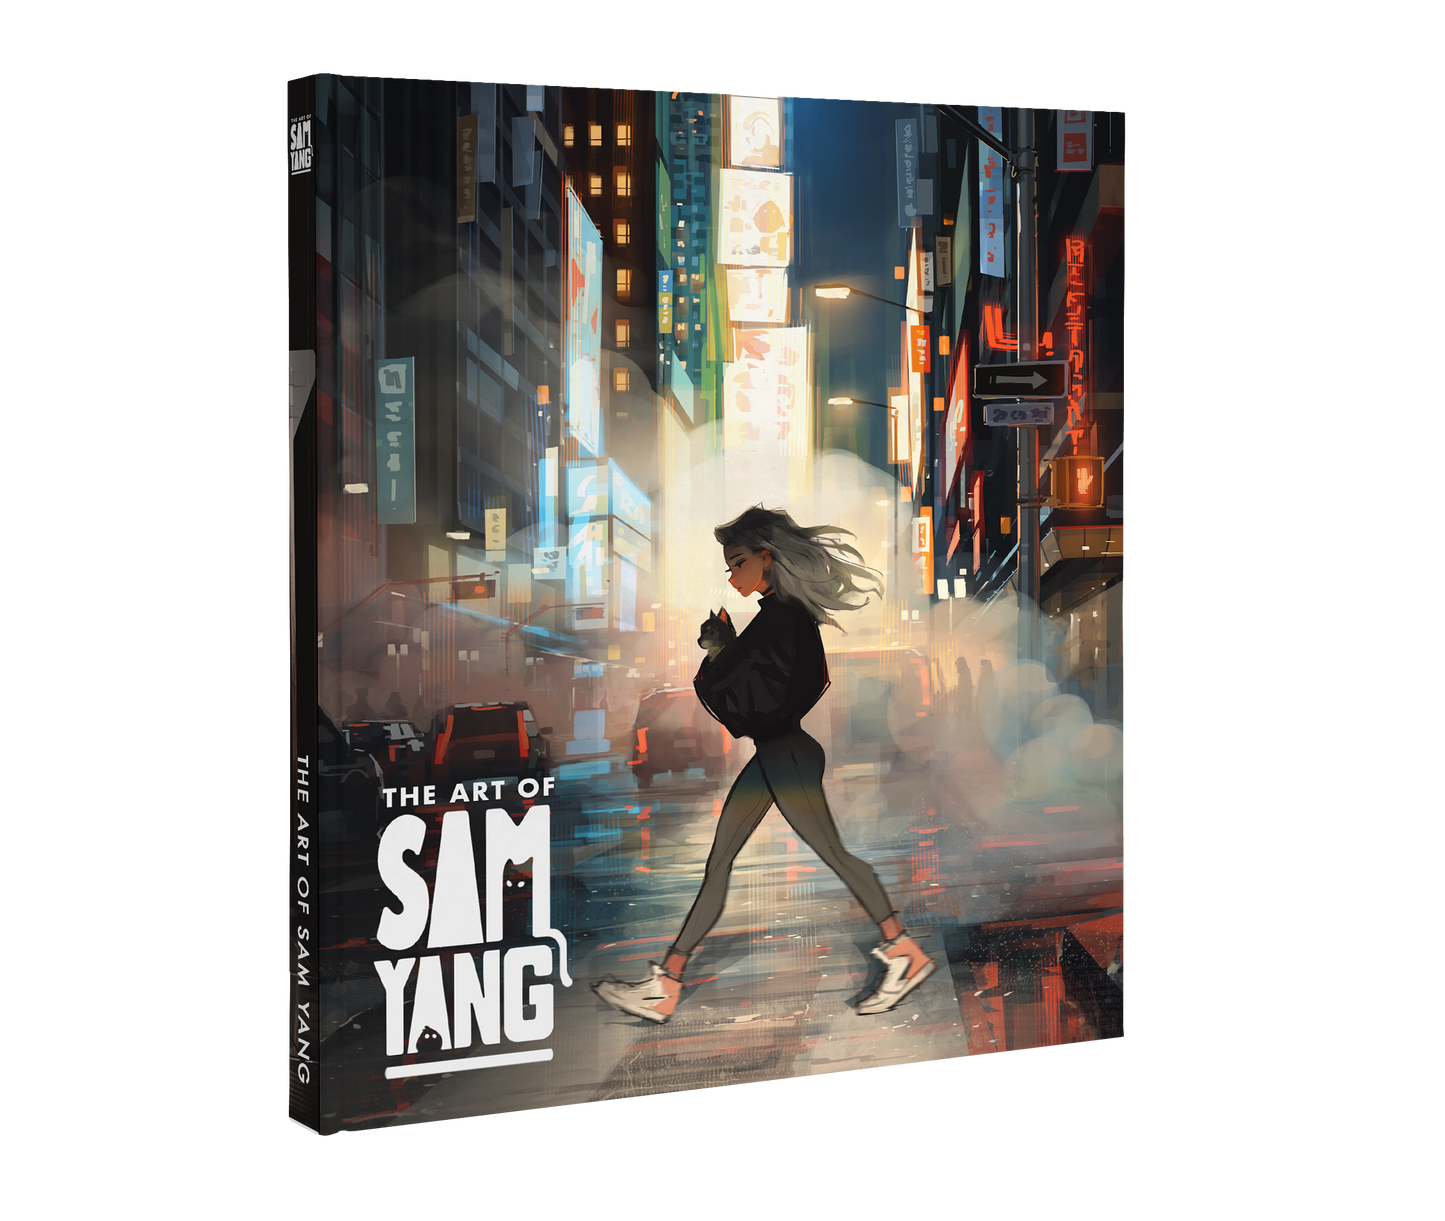 The Art of Sam Yang - PRE-ORDER!